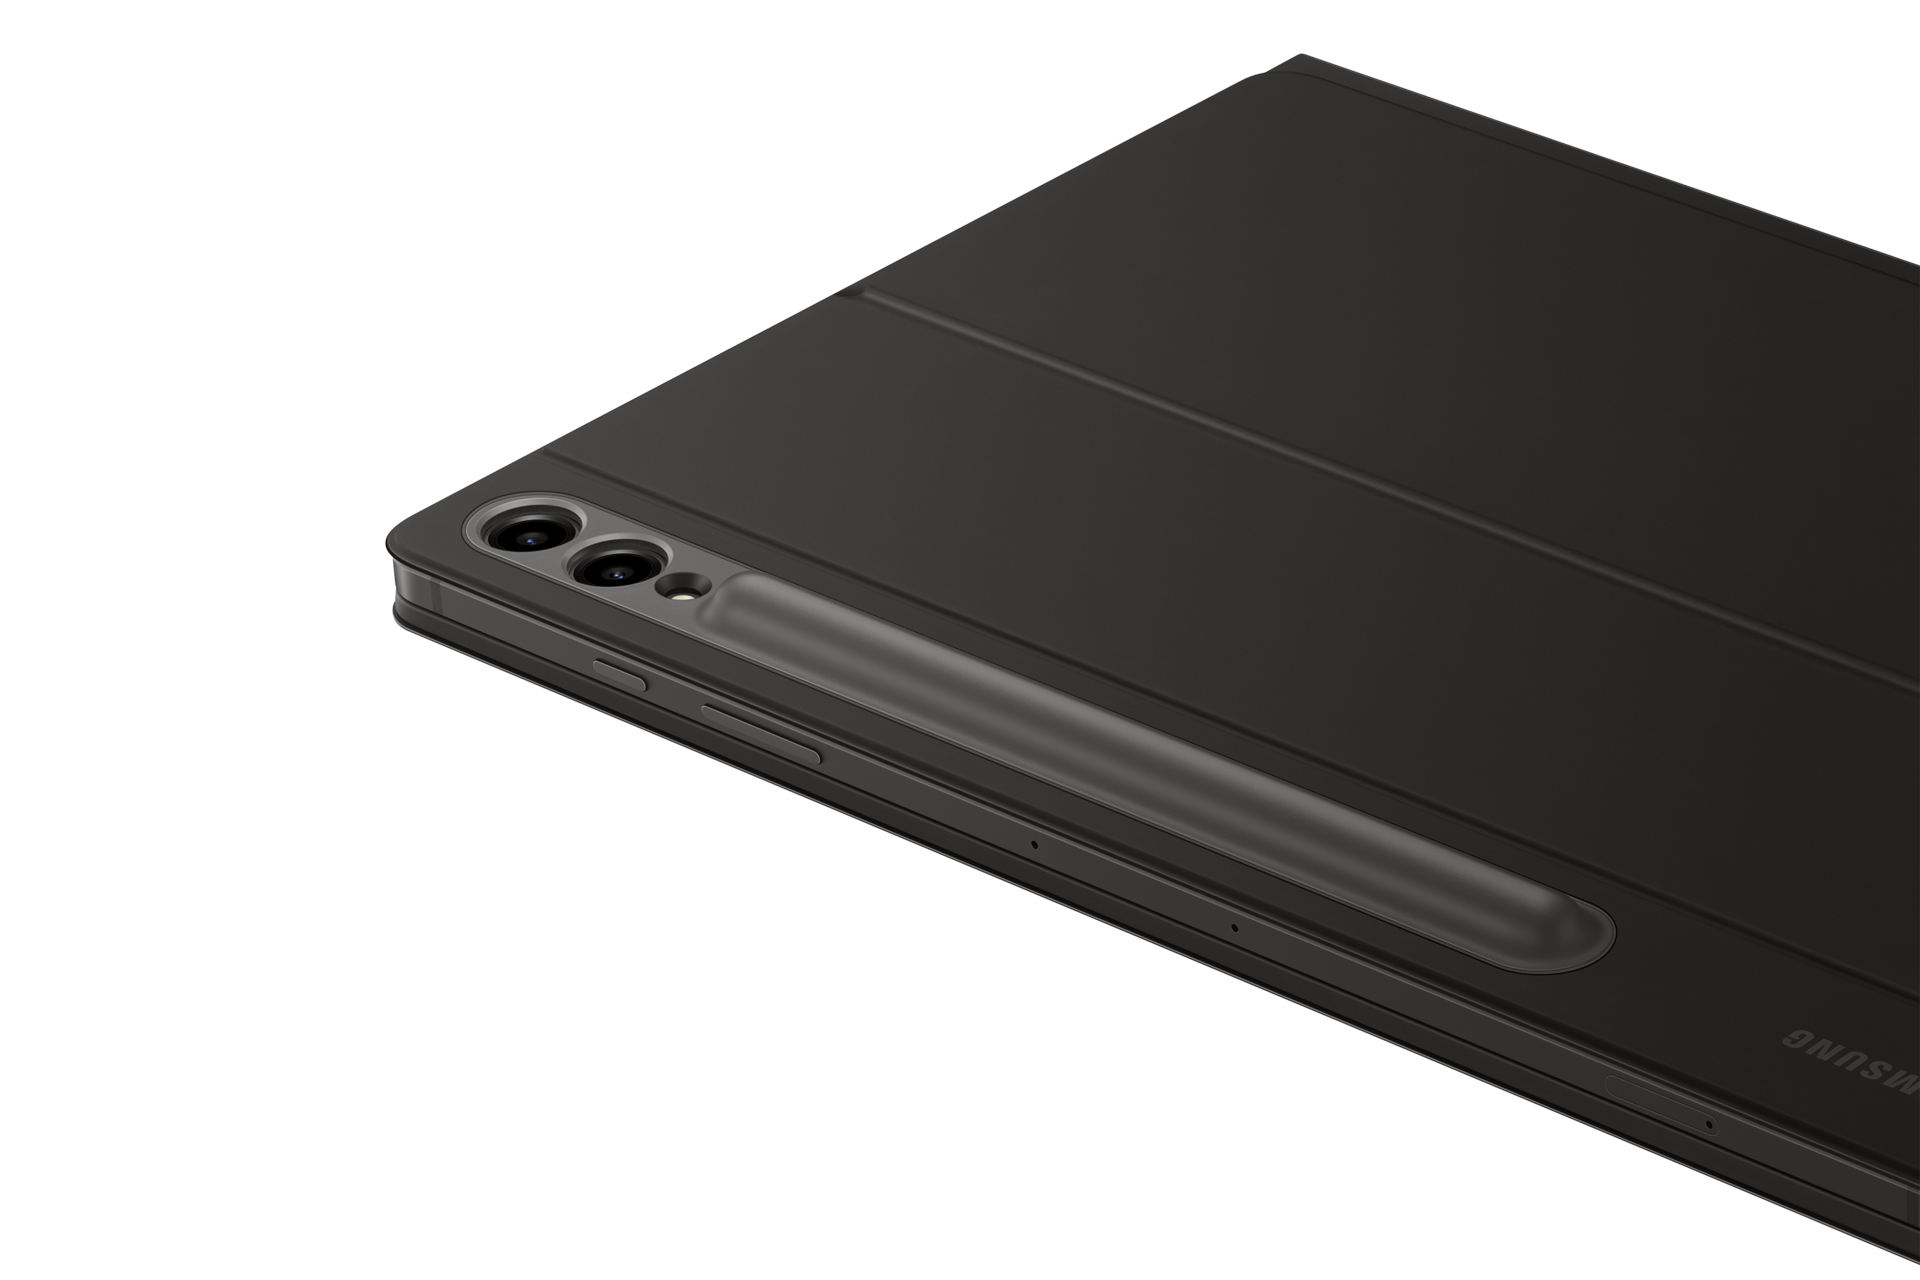 갤럭시 탭 S9+ 키보드 북커버 (블랙) 제품에 갤럭시 탭을 장착하여 카메라 부분 확대 이미지